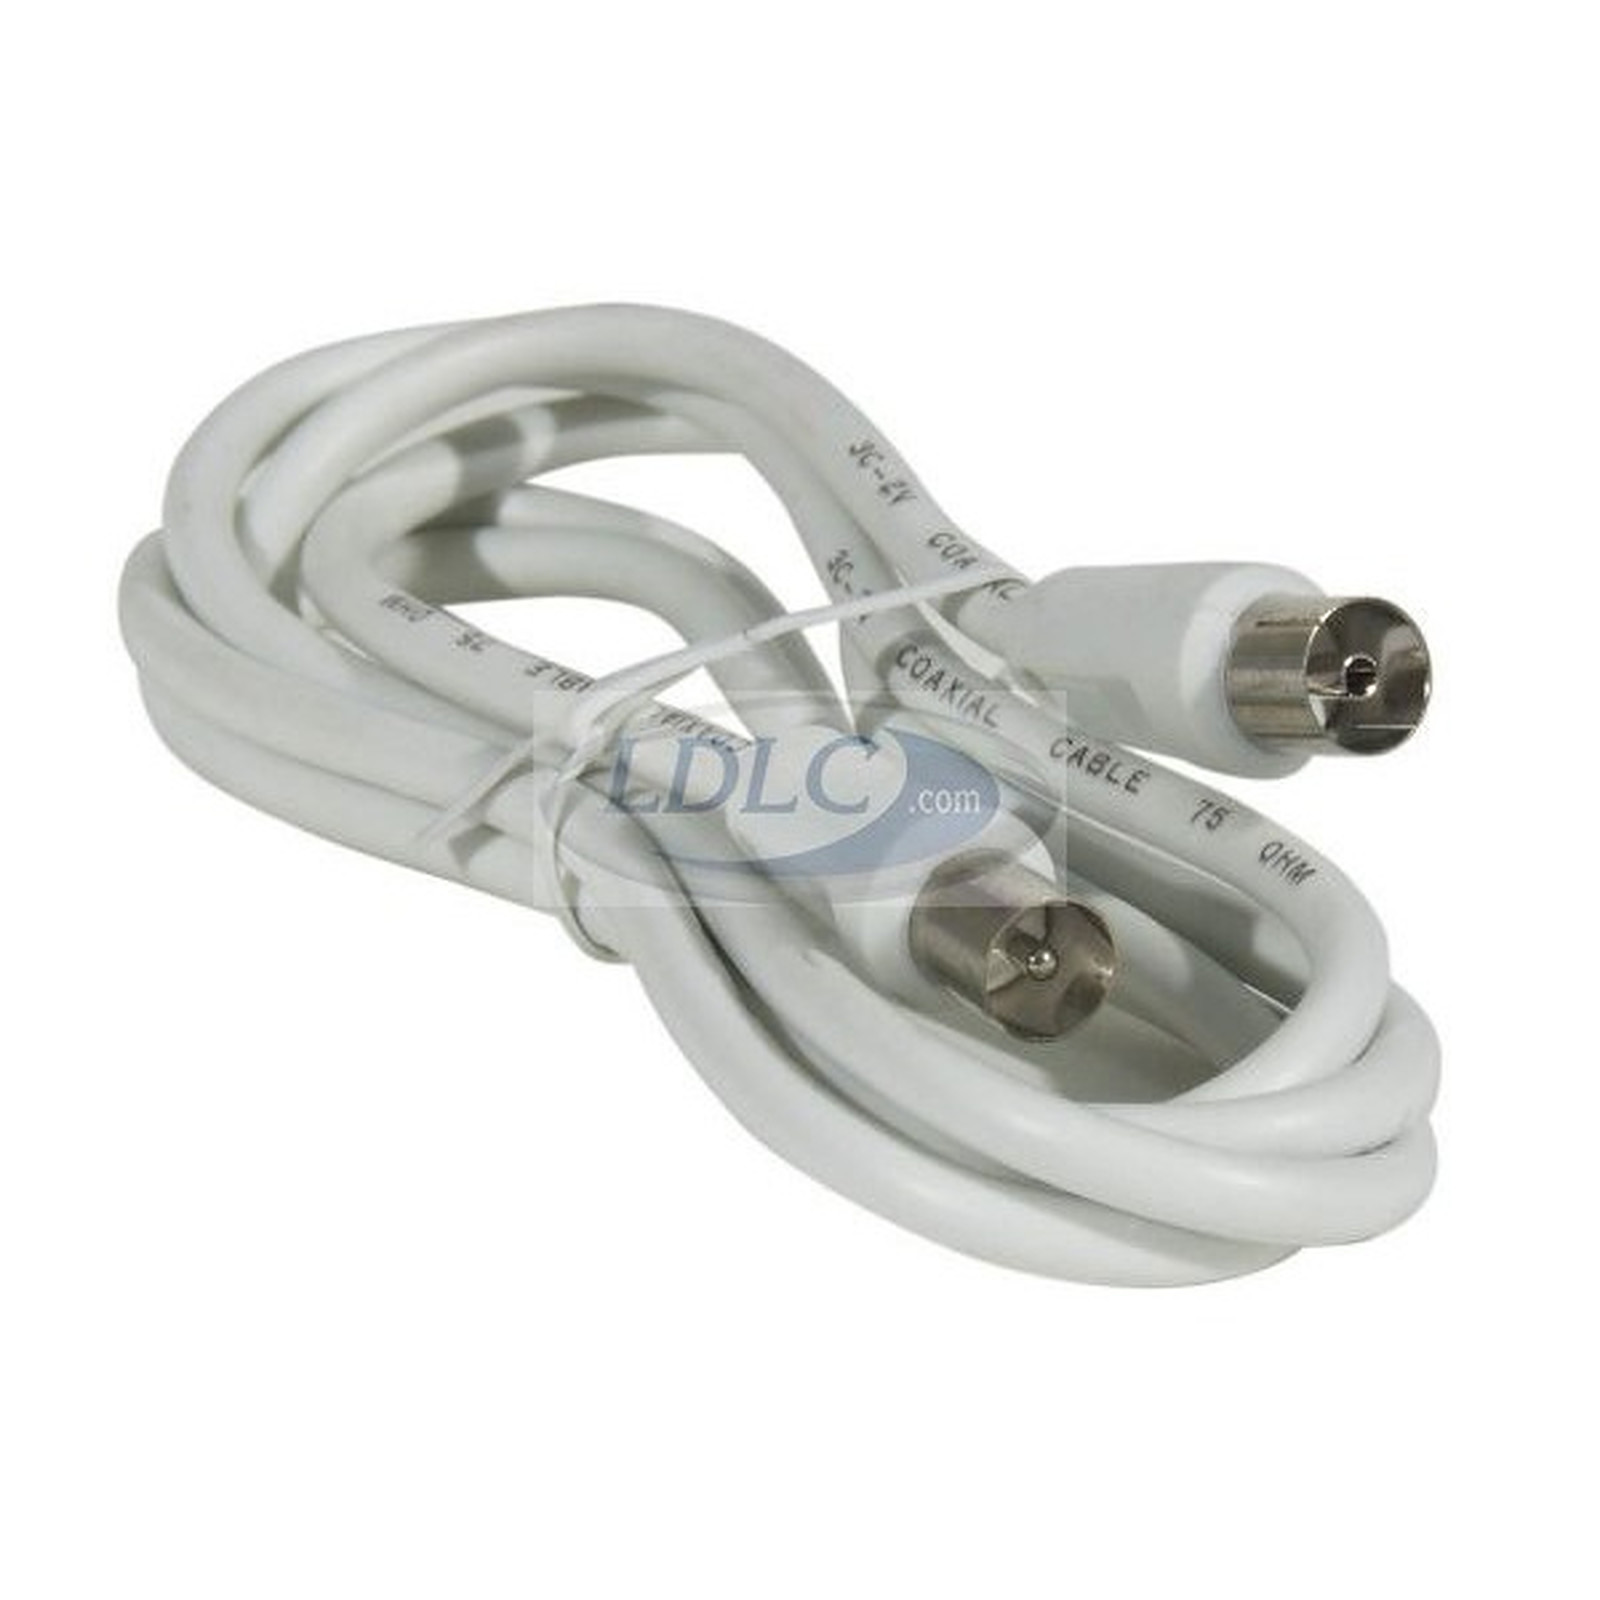 Cable coaxial male/femelle pour antenne TV (10 mètres) - (coloris blanc) - Cable antenne TV Generique